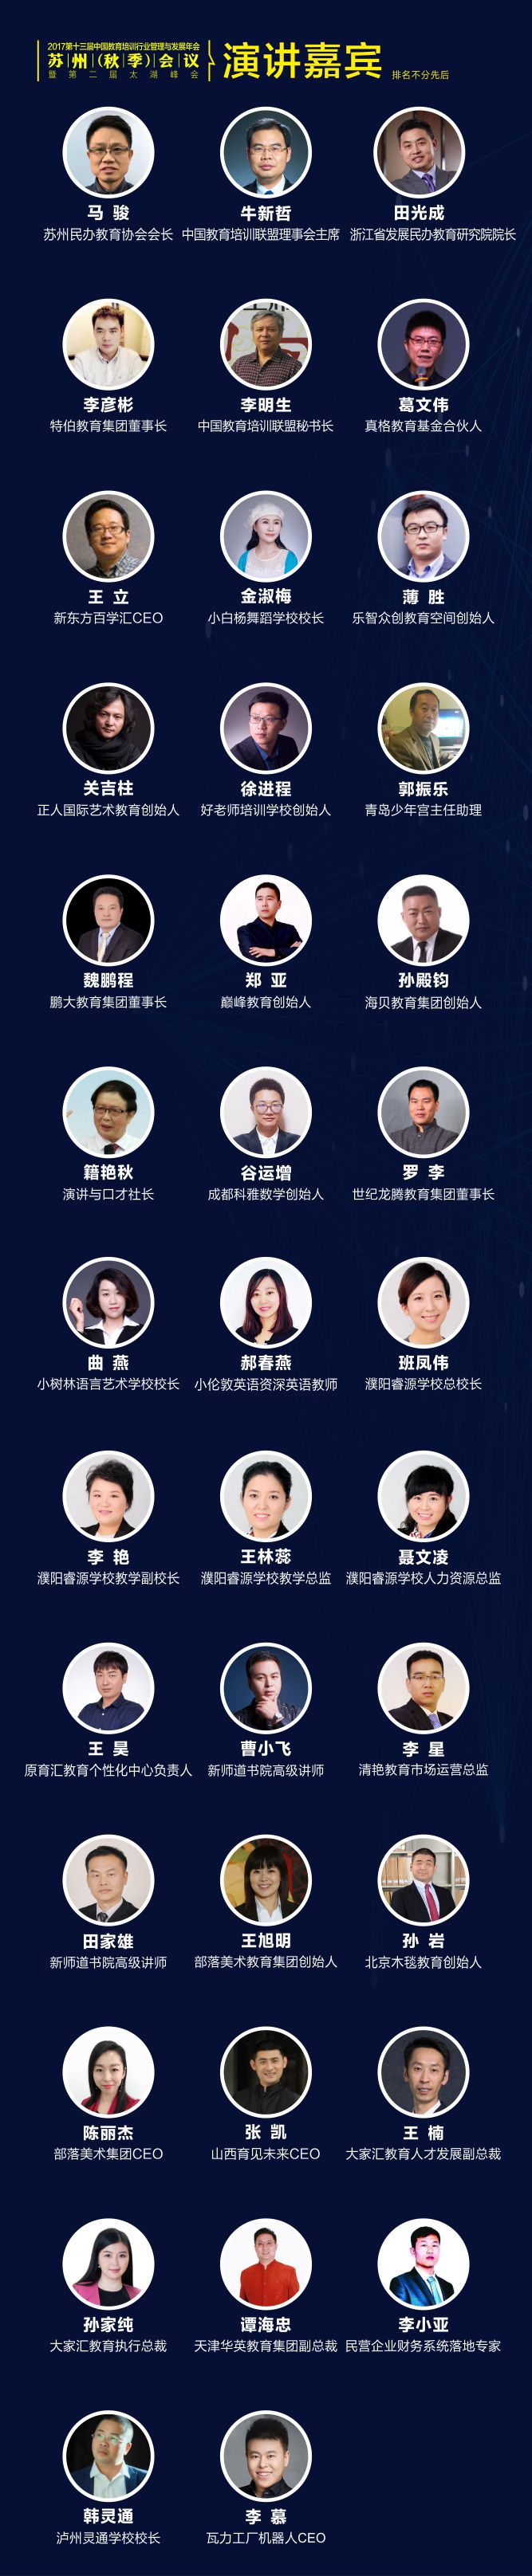 2017联盟苏州秋季年会暨民办教育太湖峰会